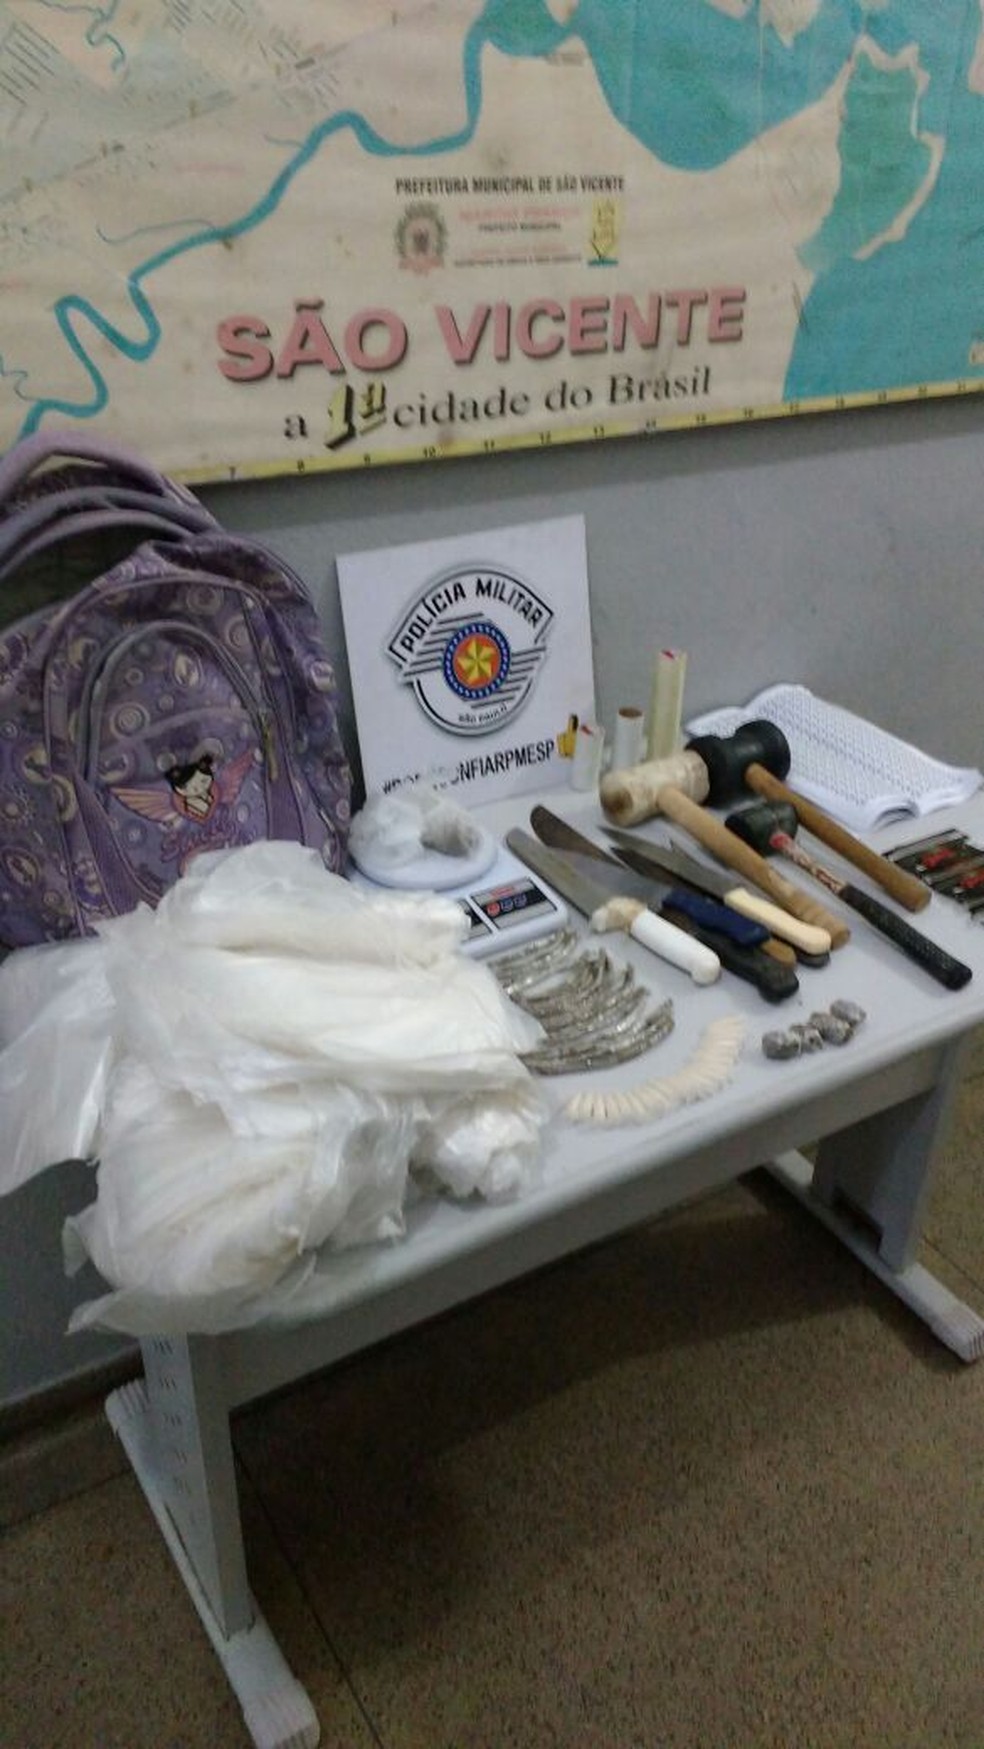 Objetos relacionados ao tráfico de drogas foram encontrados dentro do barraco em São Vicente, SP. (Foto: Divulgação/Polícia Militar)